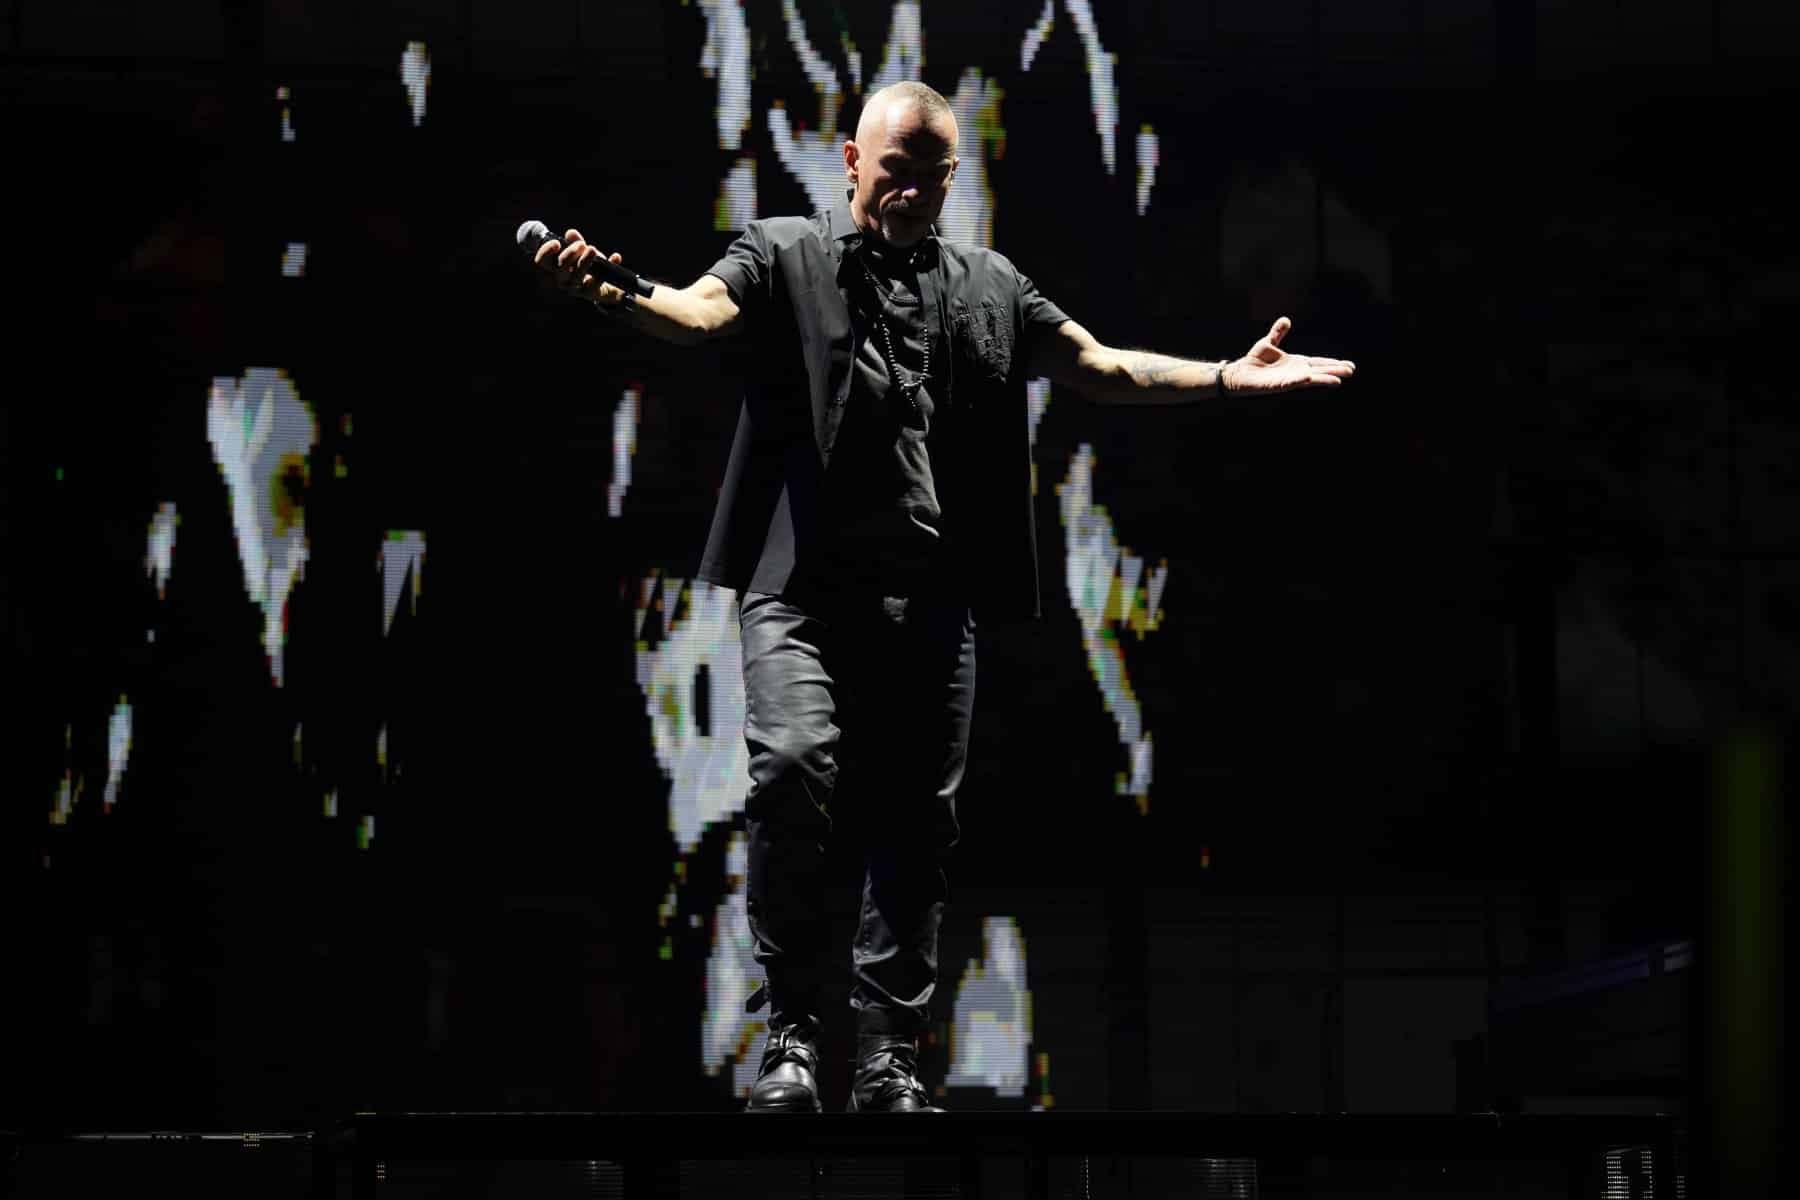 04.03.2023 Eros Ramazzotti auf “Battito Infinito”-Tour in der SAP Arena Mannheim.